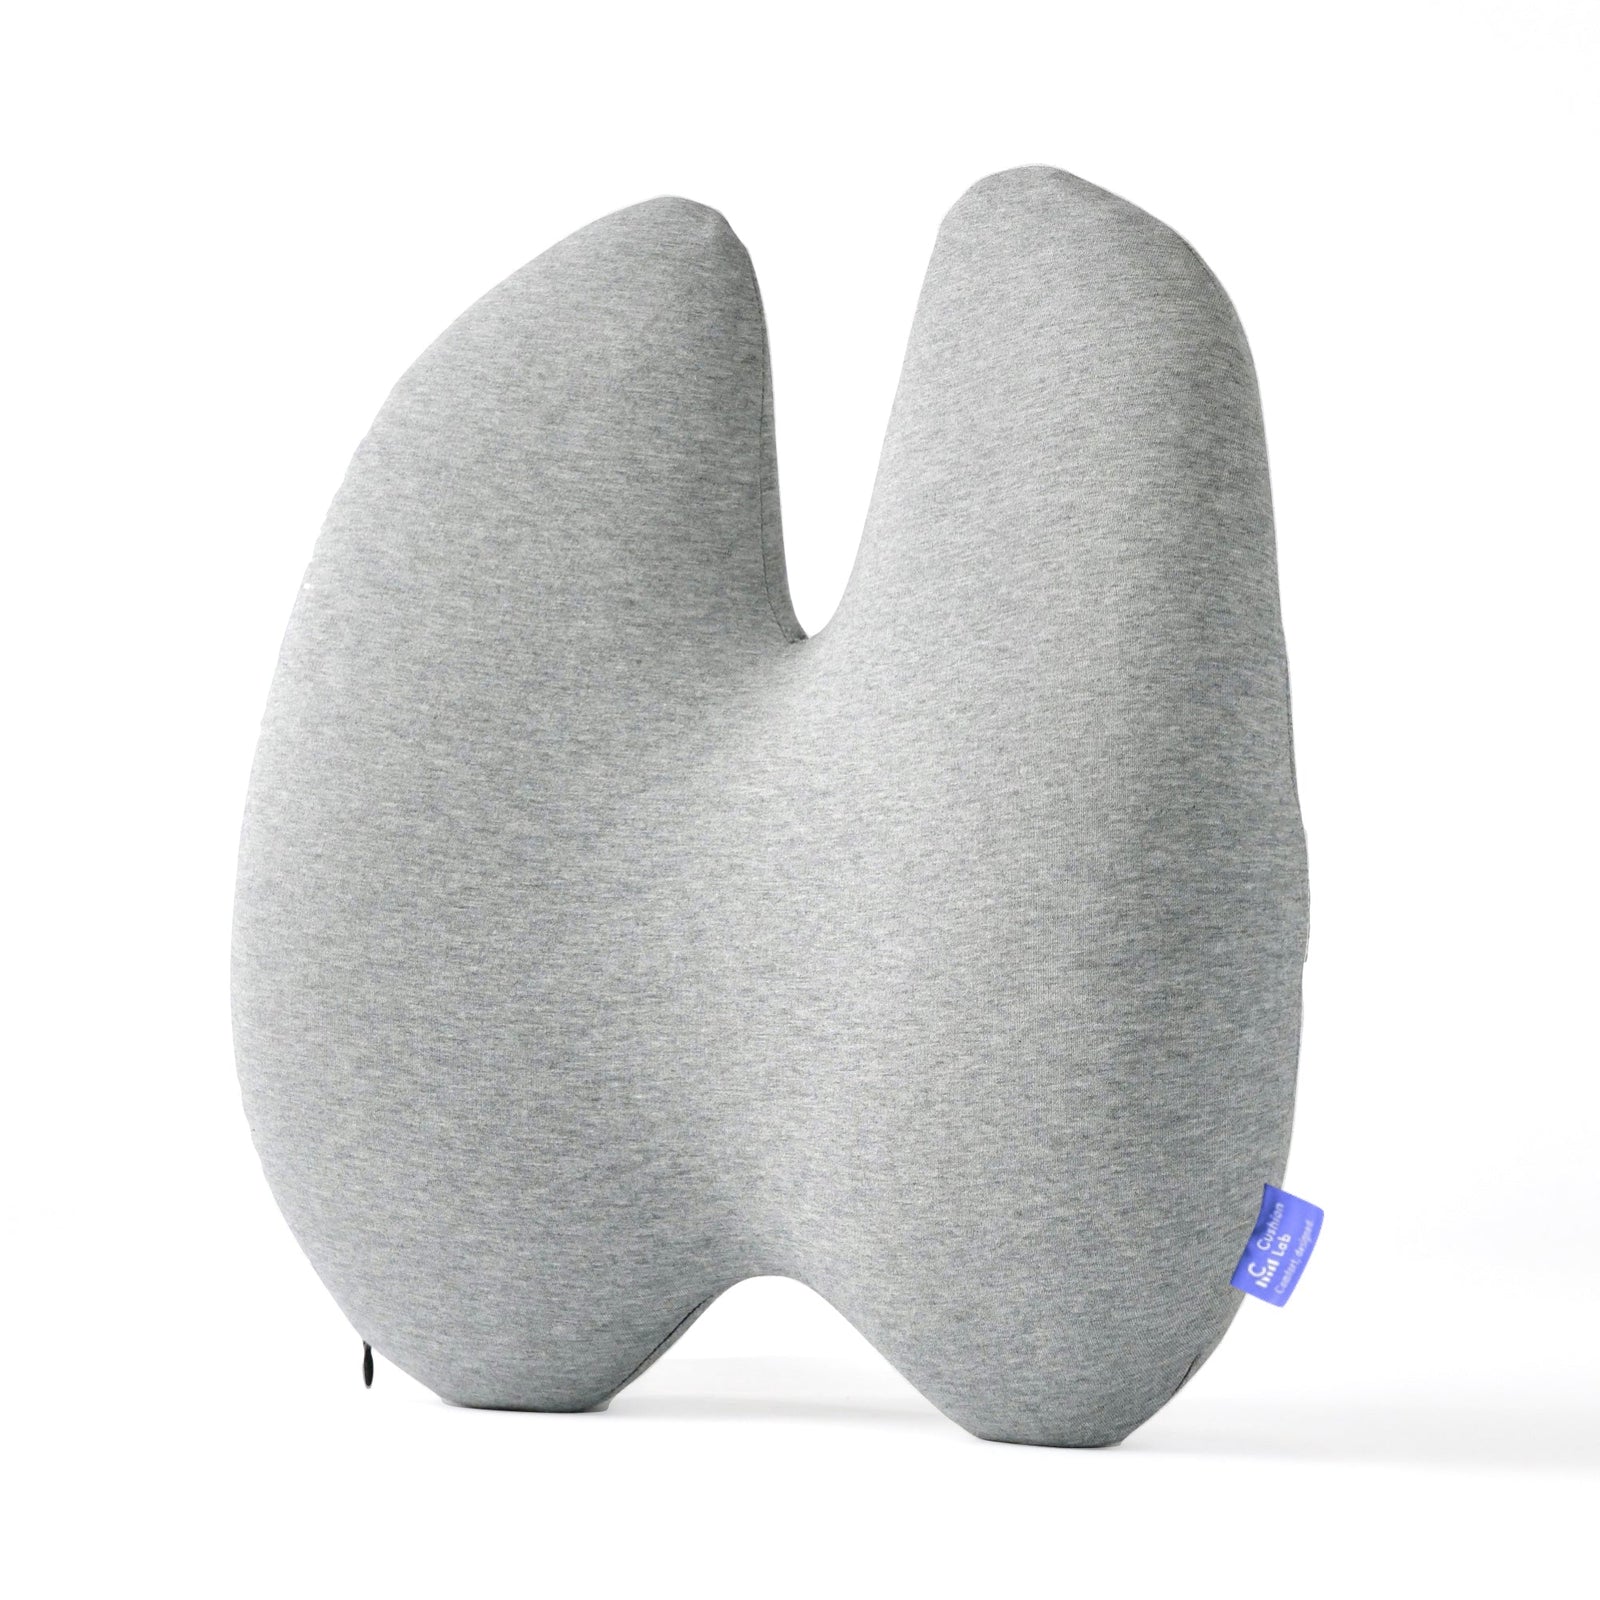  Cushion Lab - Almohada para dormir profundo, diseño ergonómico  patentado para personas que duermen de lado y de espalda, forma cervical  ortopédica acuna suavemente la cabeza y proporciona apoyo para el